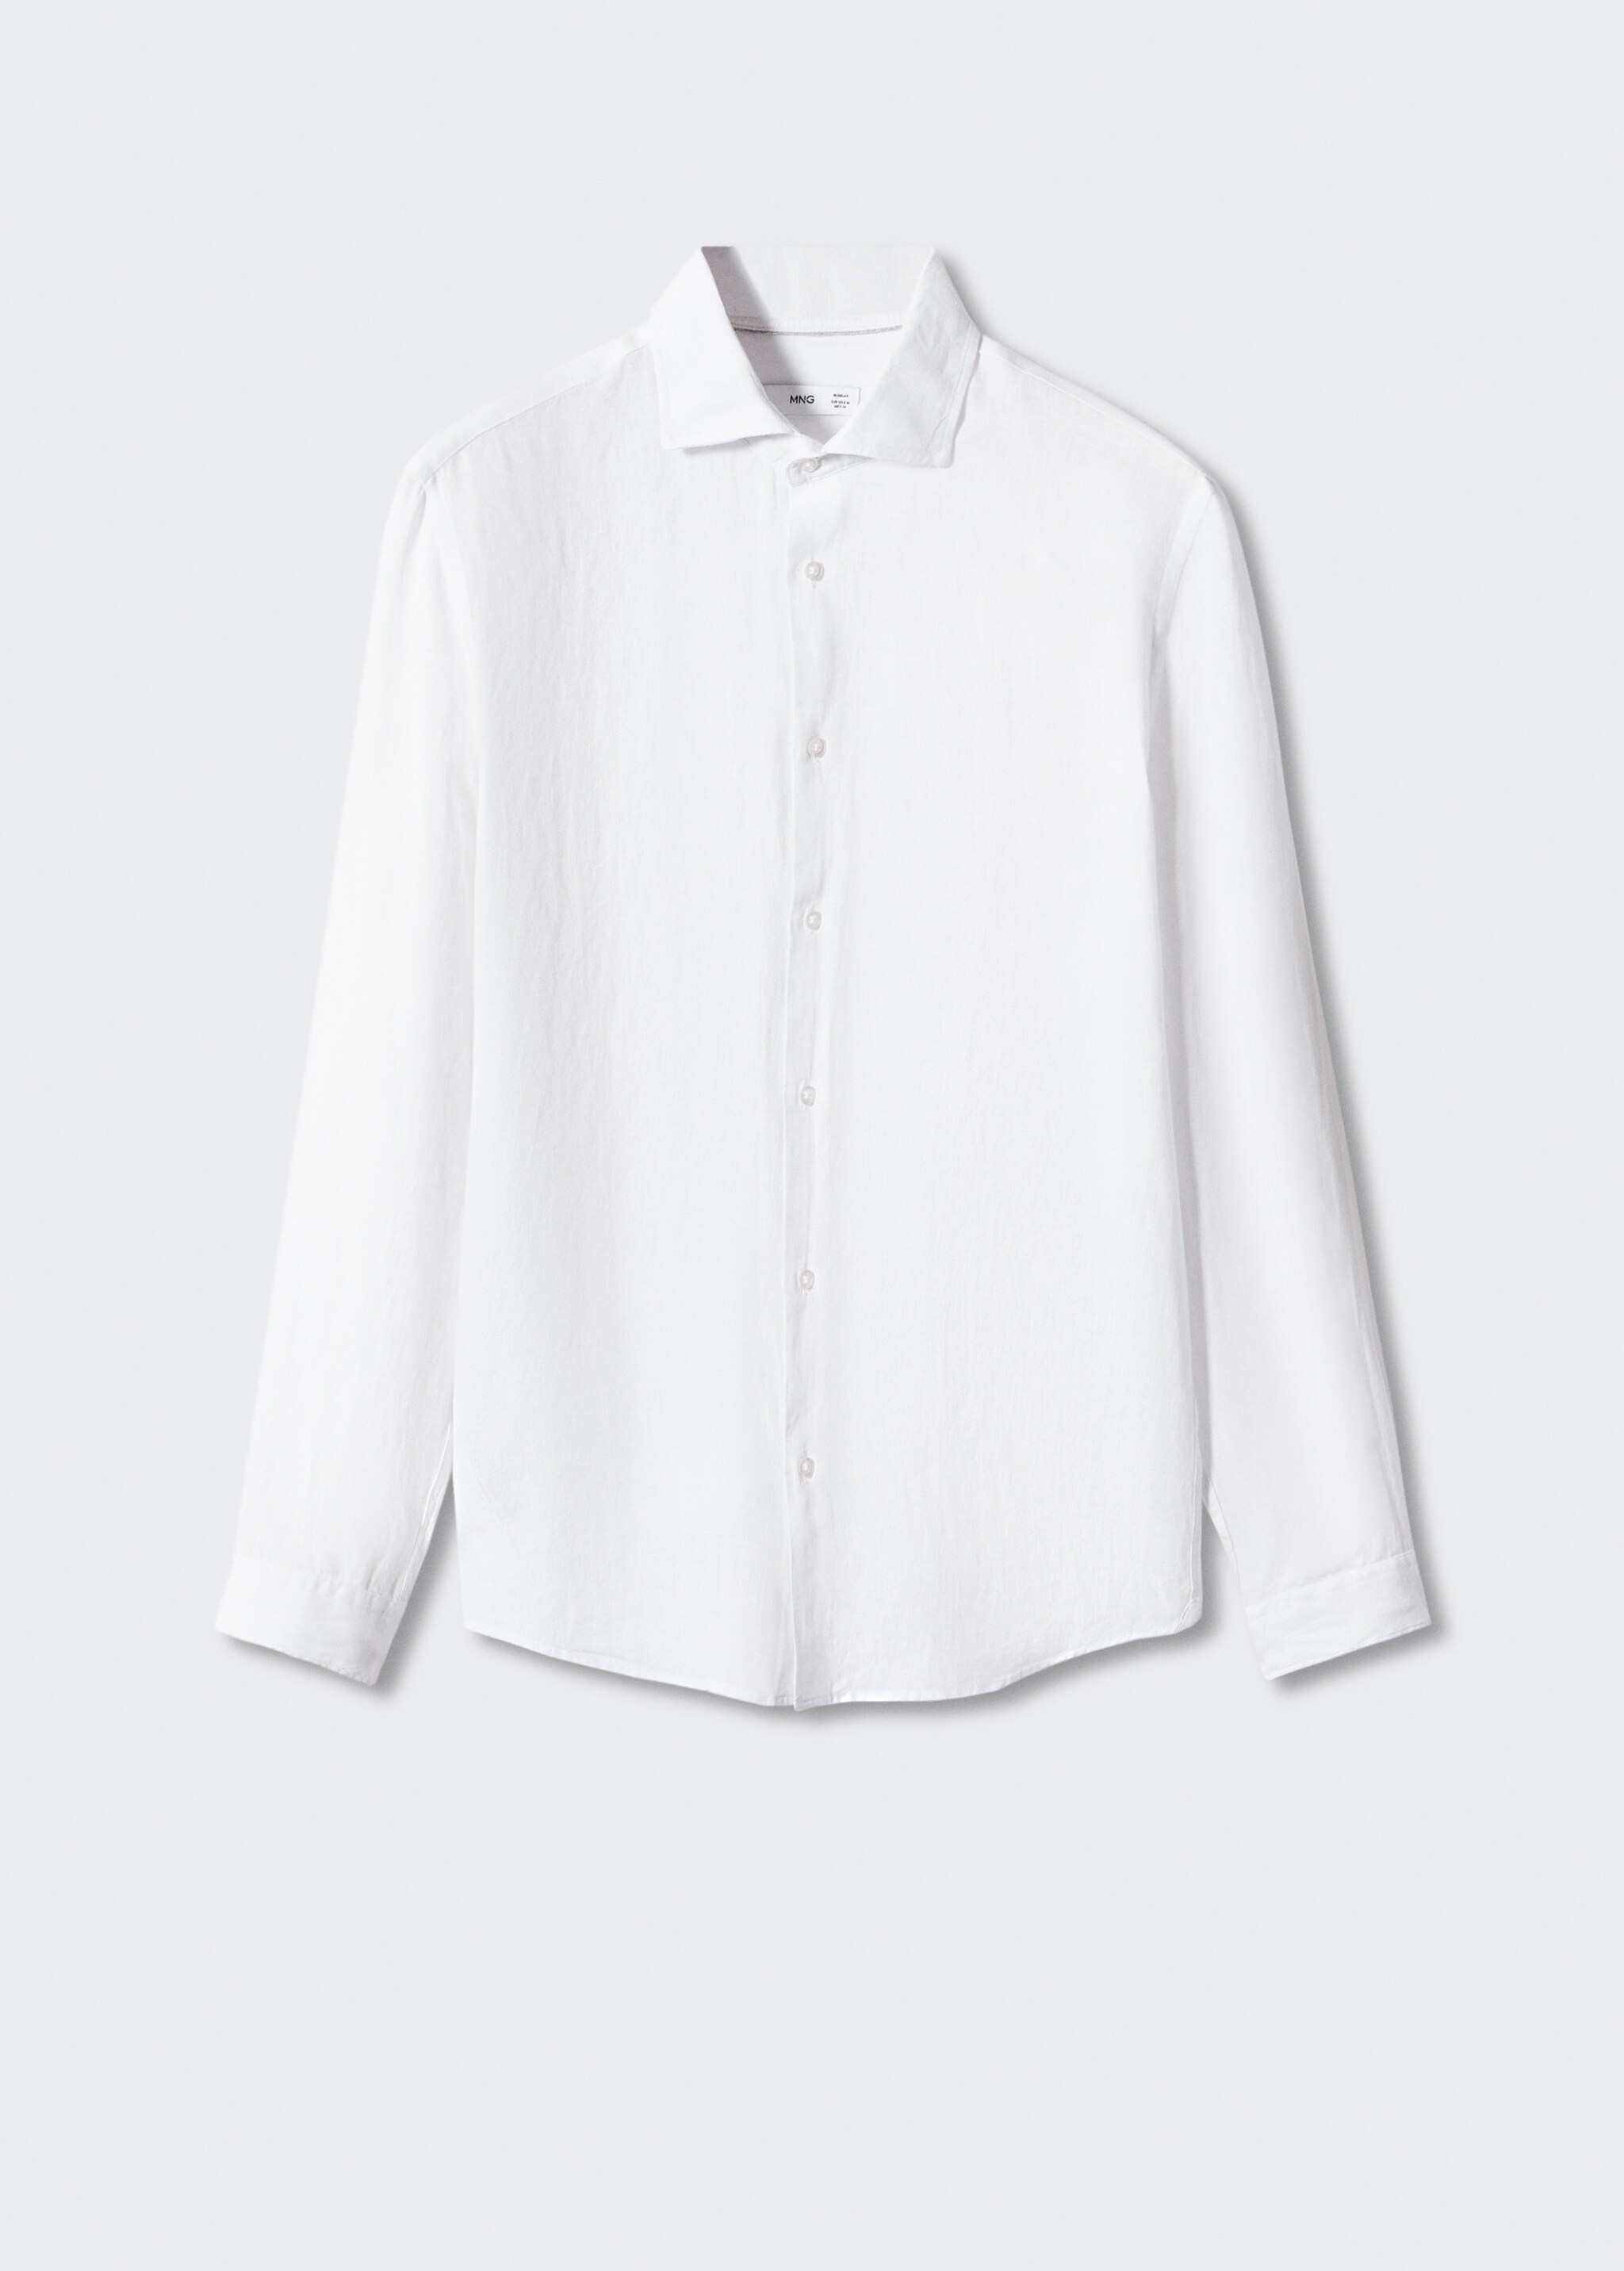 Camisa regular fit 100% lino - Artículo sin modelo